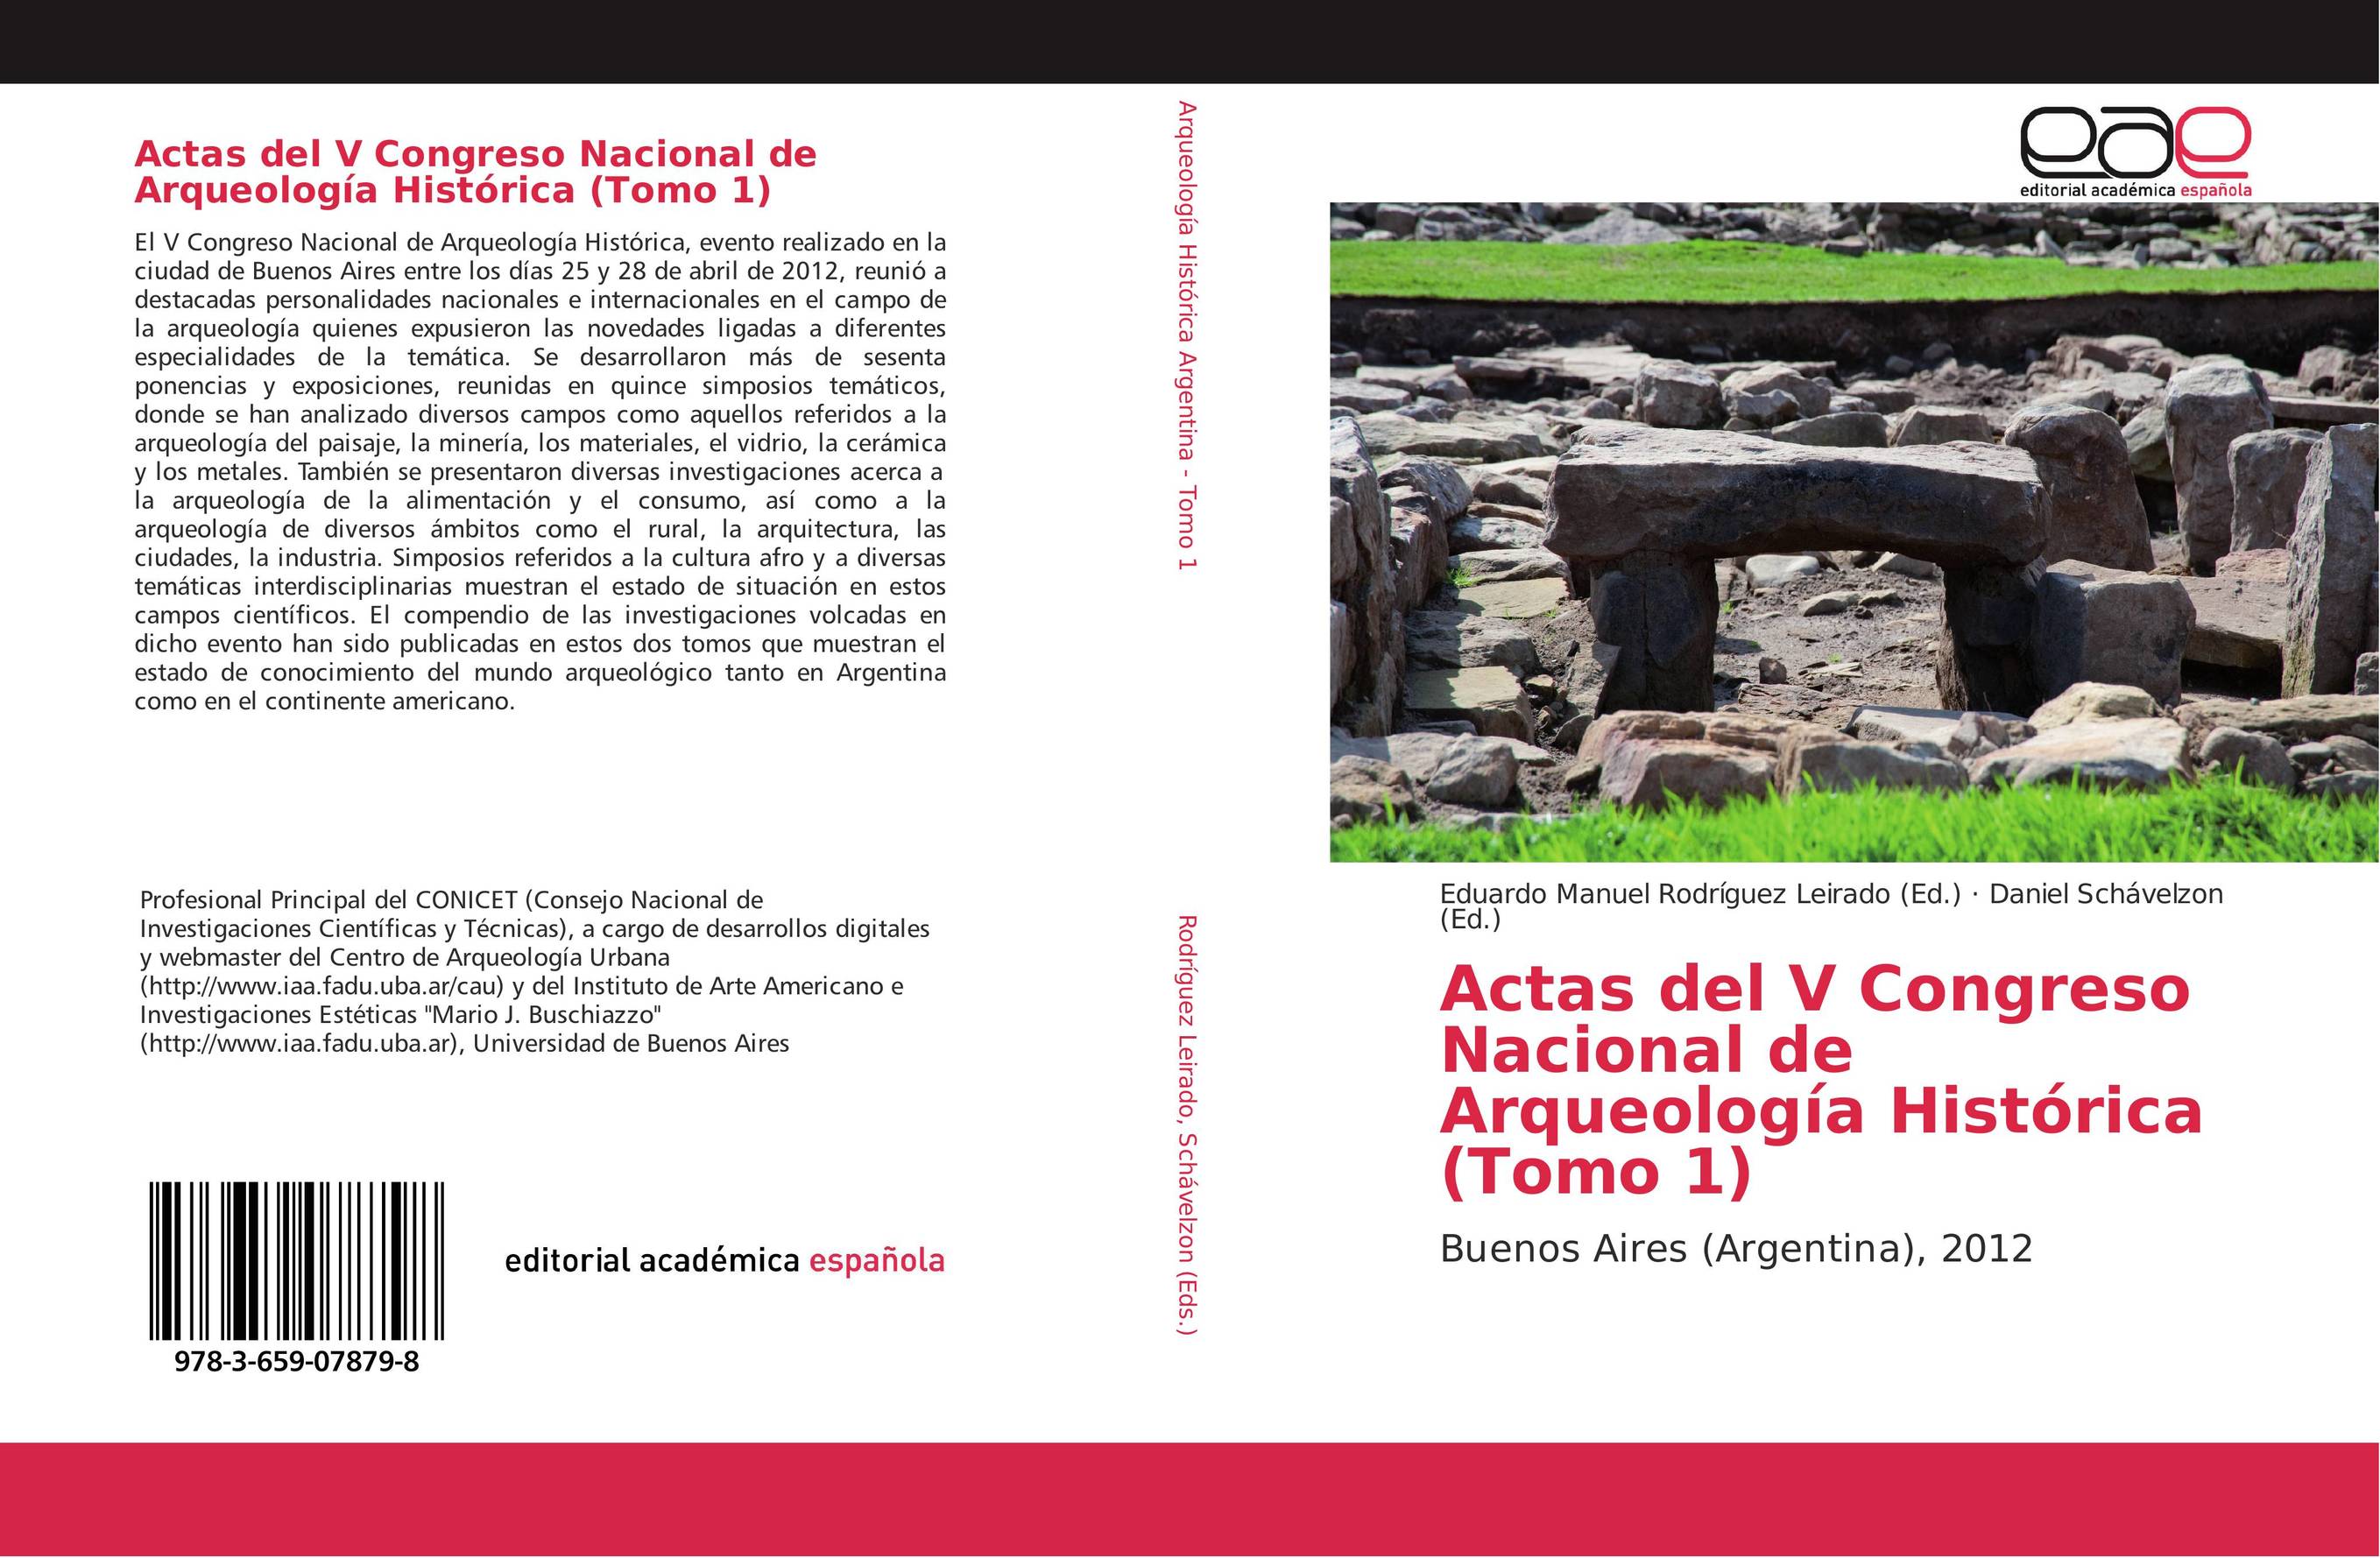 Actas del V Congreso Nacional de Arqueología Histórica (Tomo 1)